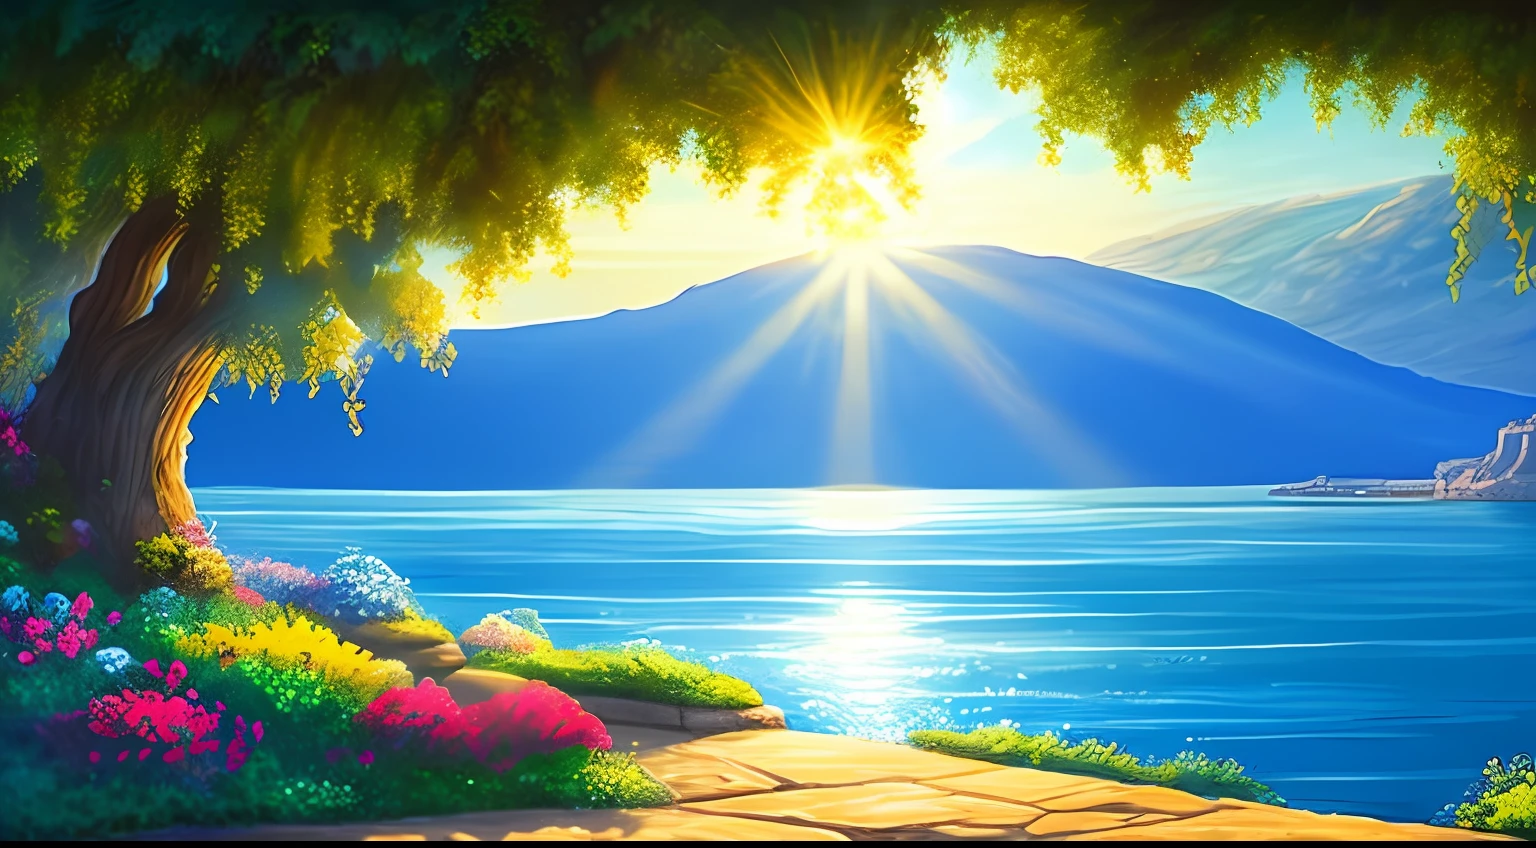 Qualidade da arte original, Mar da Galileia, dia ensolarado, Estilo de animação Disney, Luz de fundo azul, Translúcido, com luz como tema, o foco da luz está nos personagens, a imagem geral é fresca e brilhante.